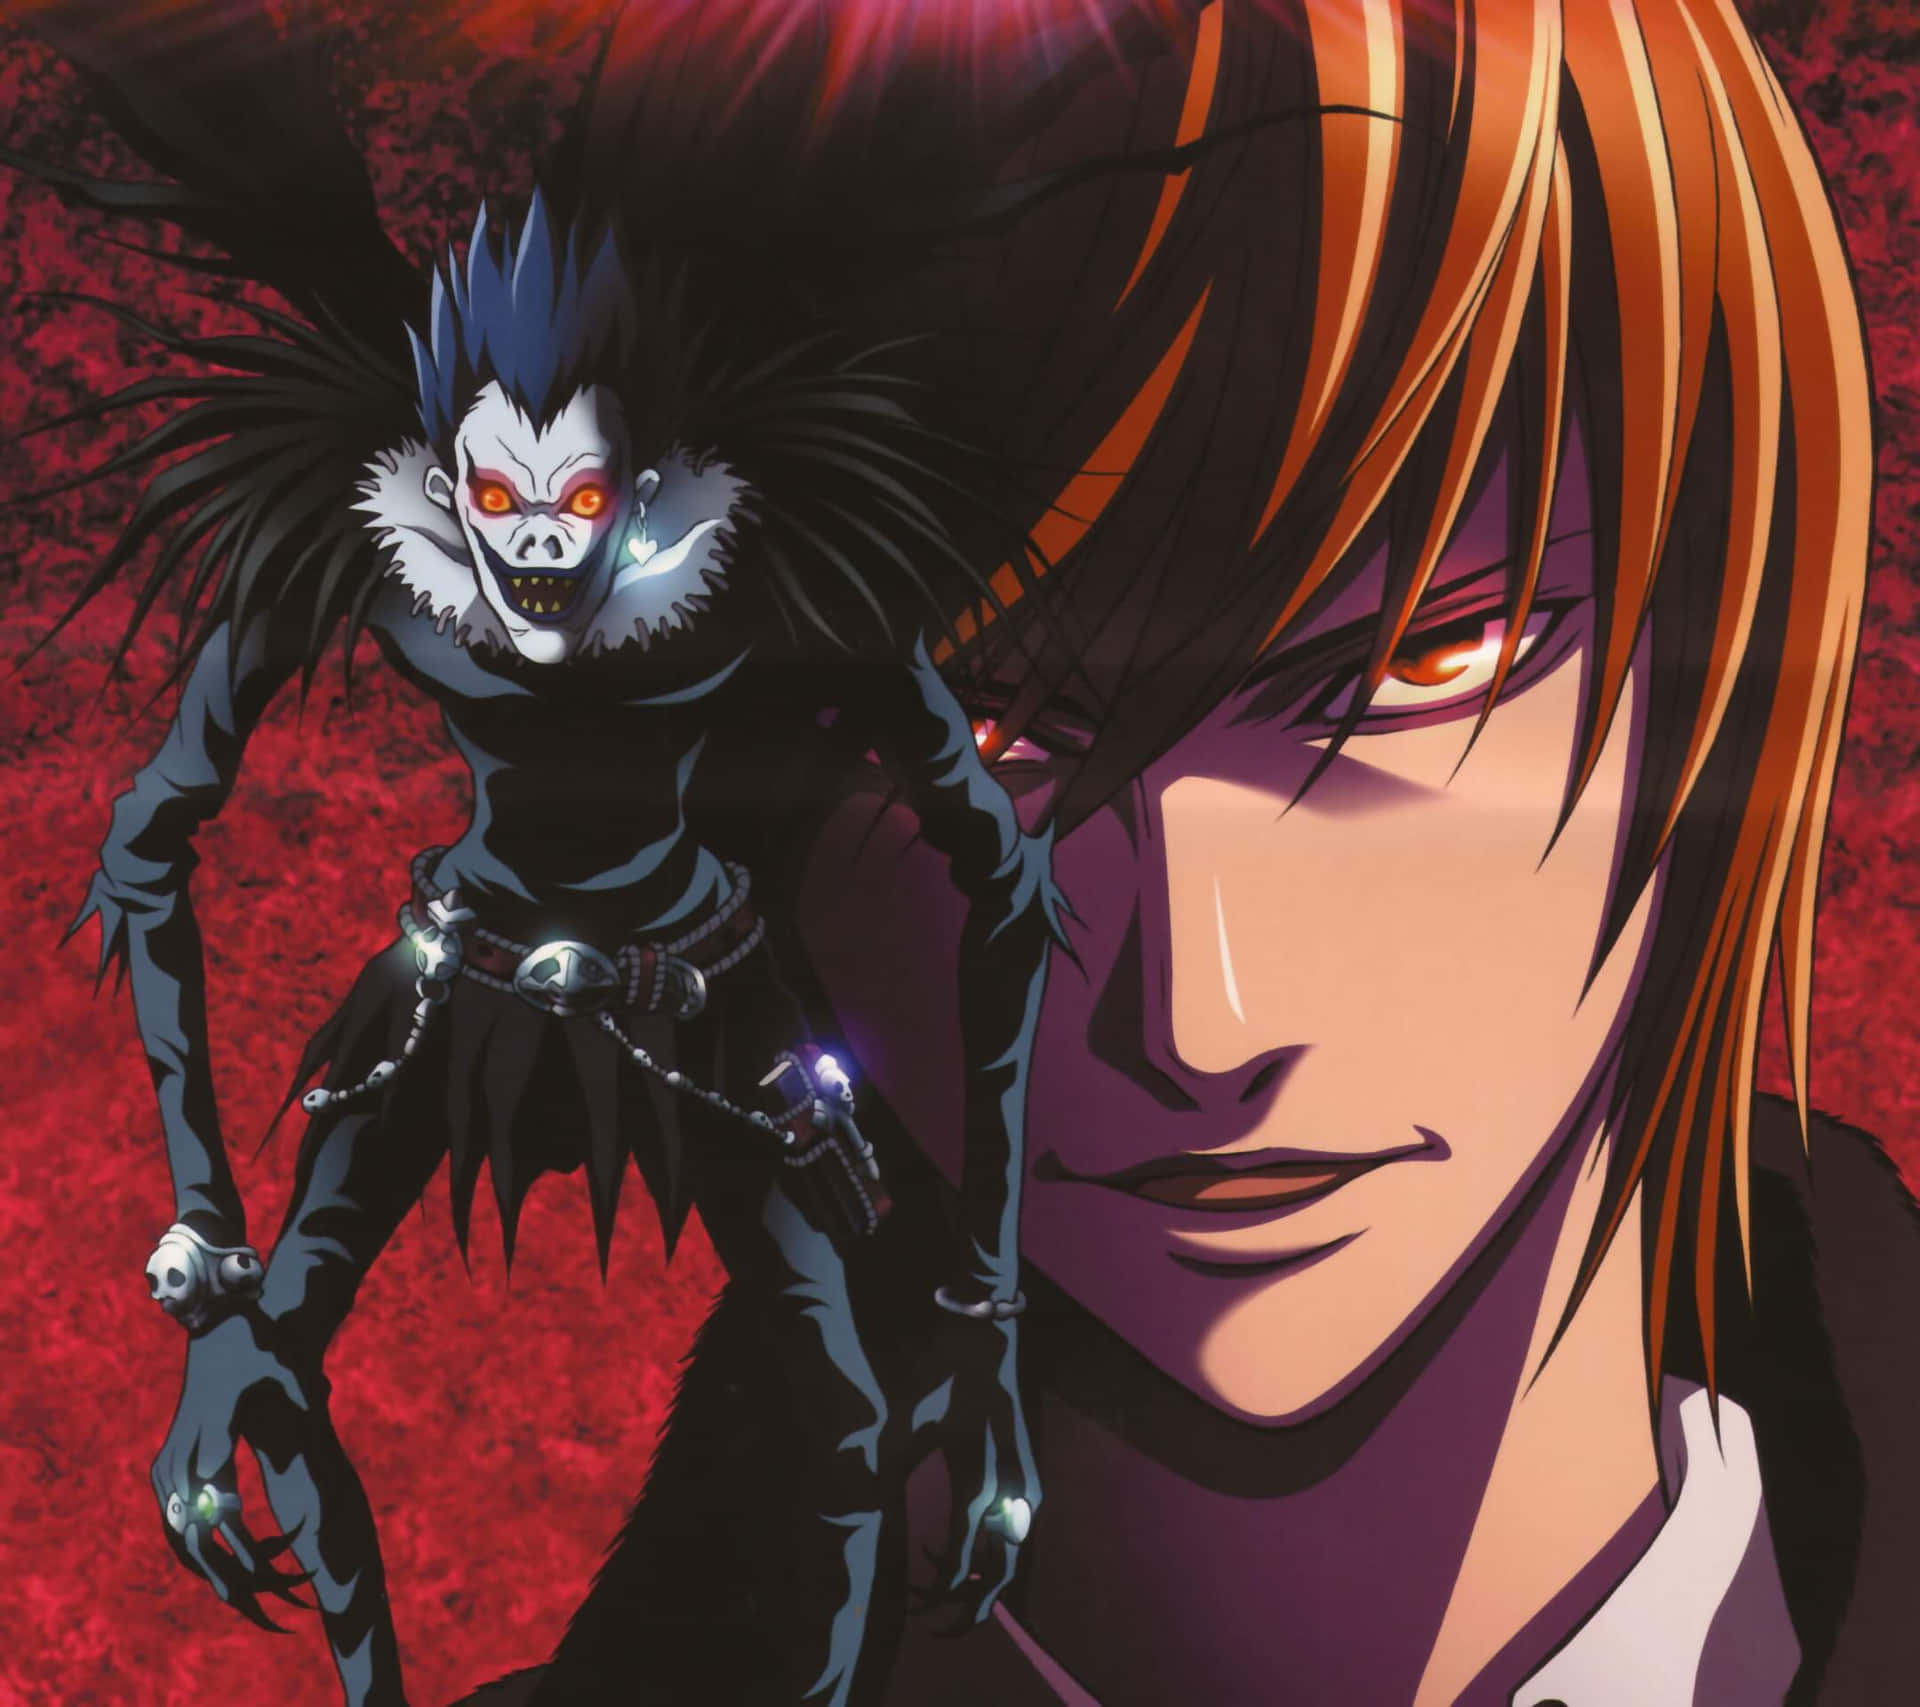 Omslagetpå Animeen Shinobi Shinobi.